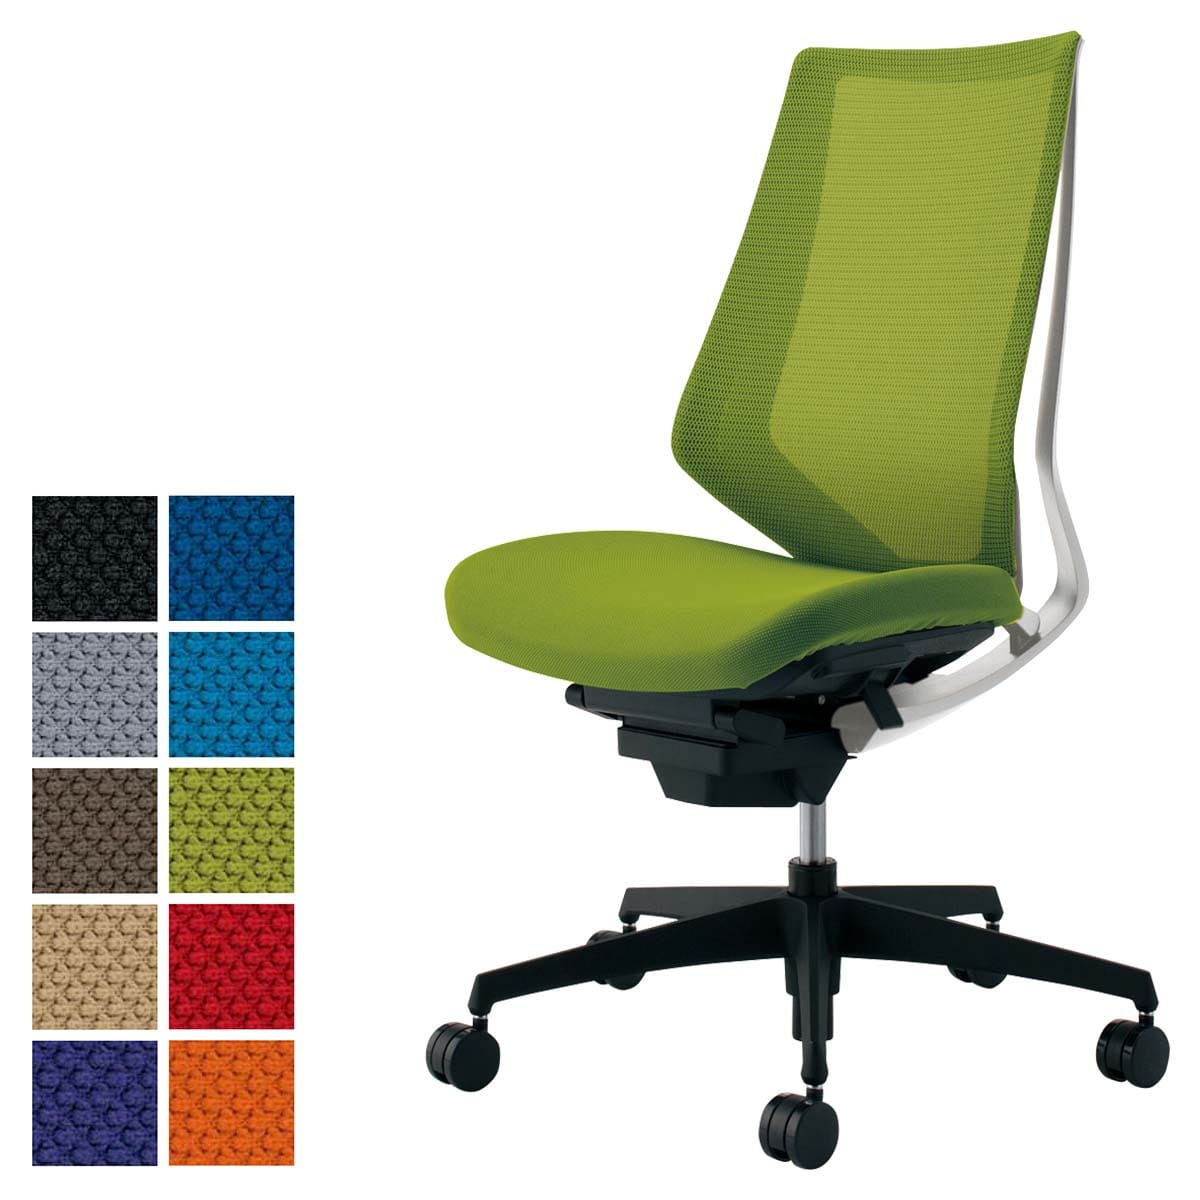 2020最新型 高品質 メーカー直送 コクヨ オフィスチェア 椅子 イス チェア ミトラ2 L型肘 ブラック ライトオリーブ - 通販